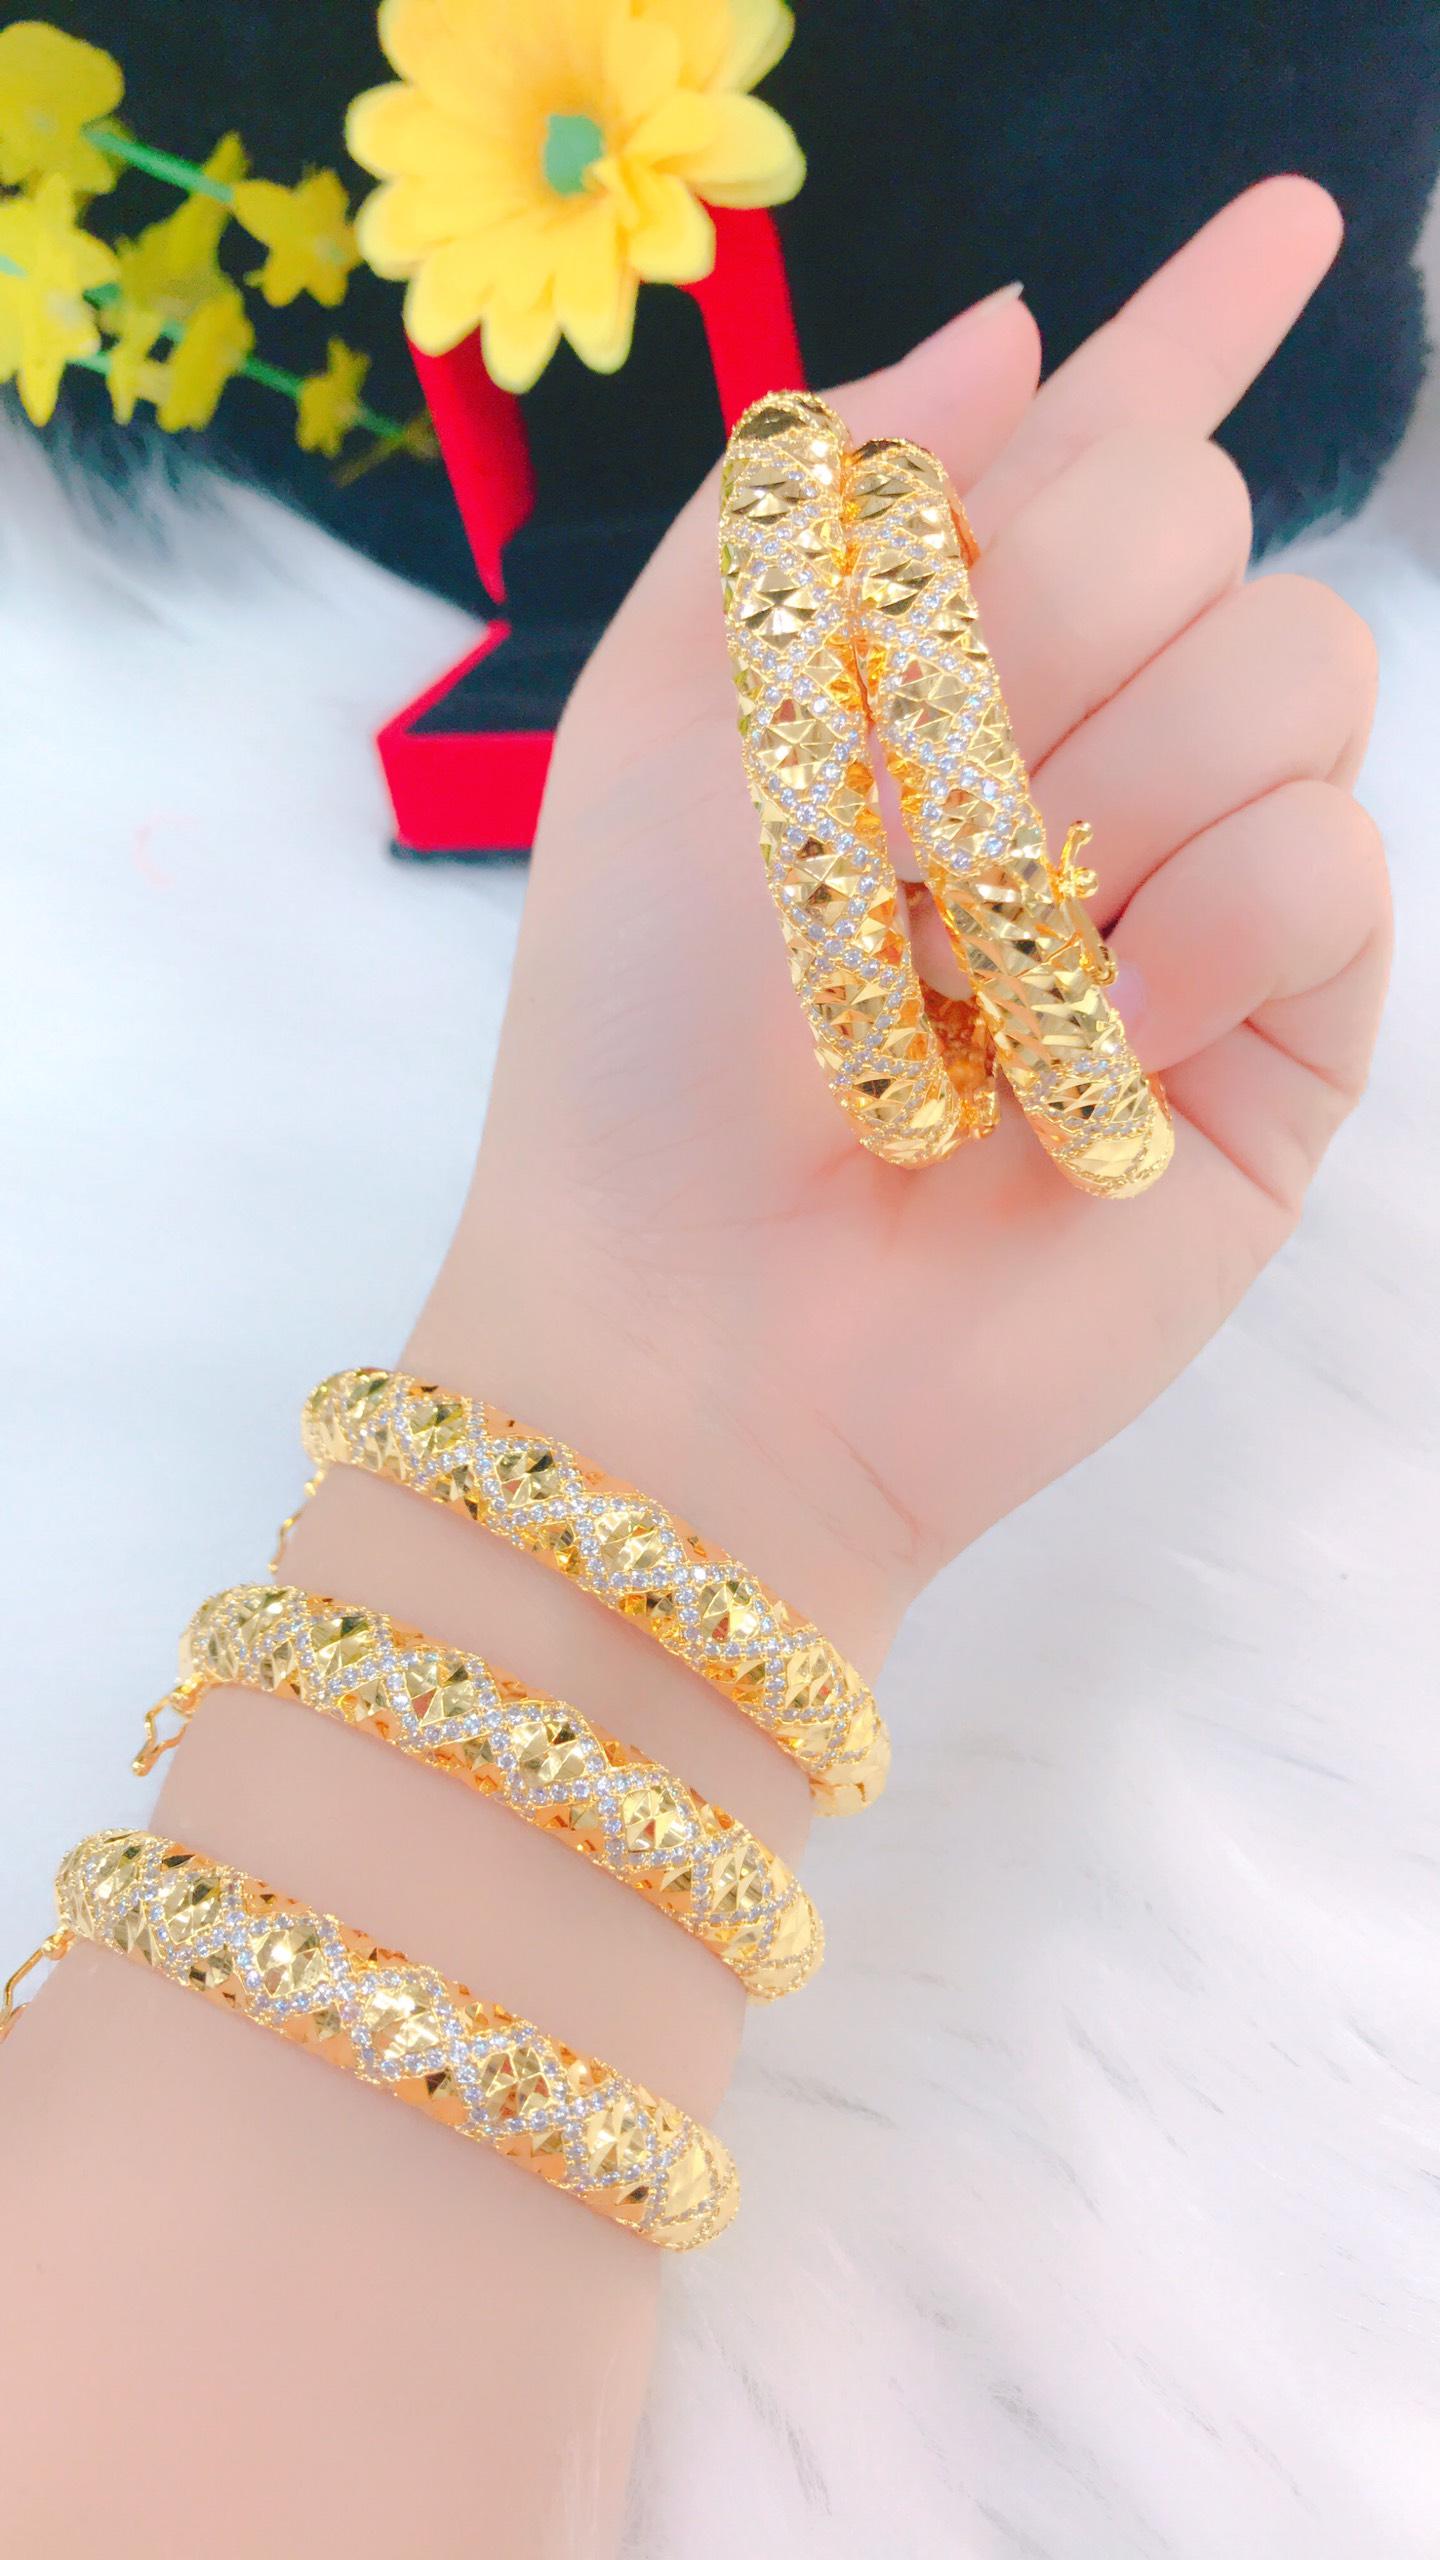 Vòng đeo tay nữ vàng 18k được thiết kế đẹp mắt và sang trọng, làm từ vàng 18k cao cấp. Đây là phụ kiện thời trang không thể thiếu cho bất kỳ cô gái nào yêu thích sự đẳng cấp và tinh tế.